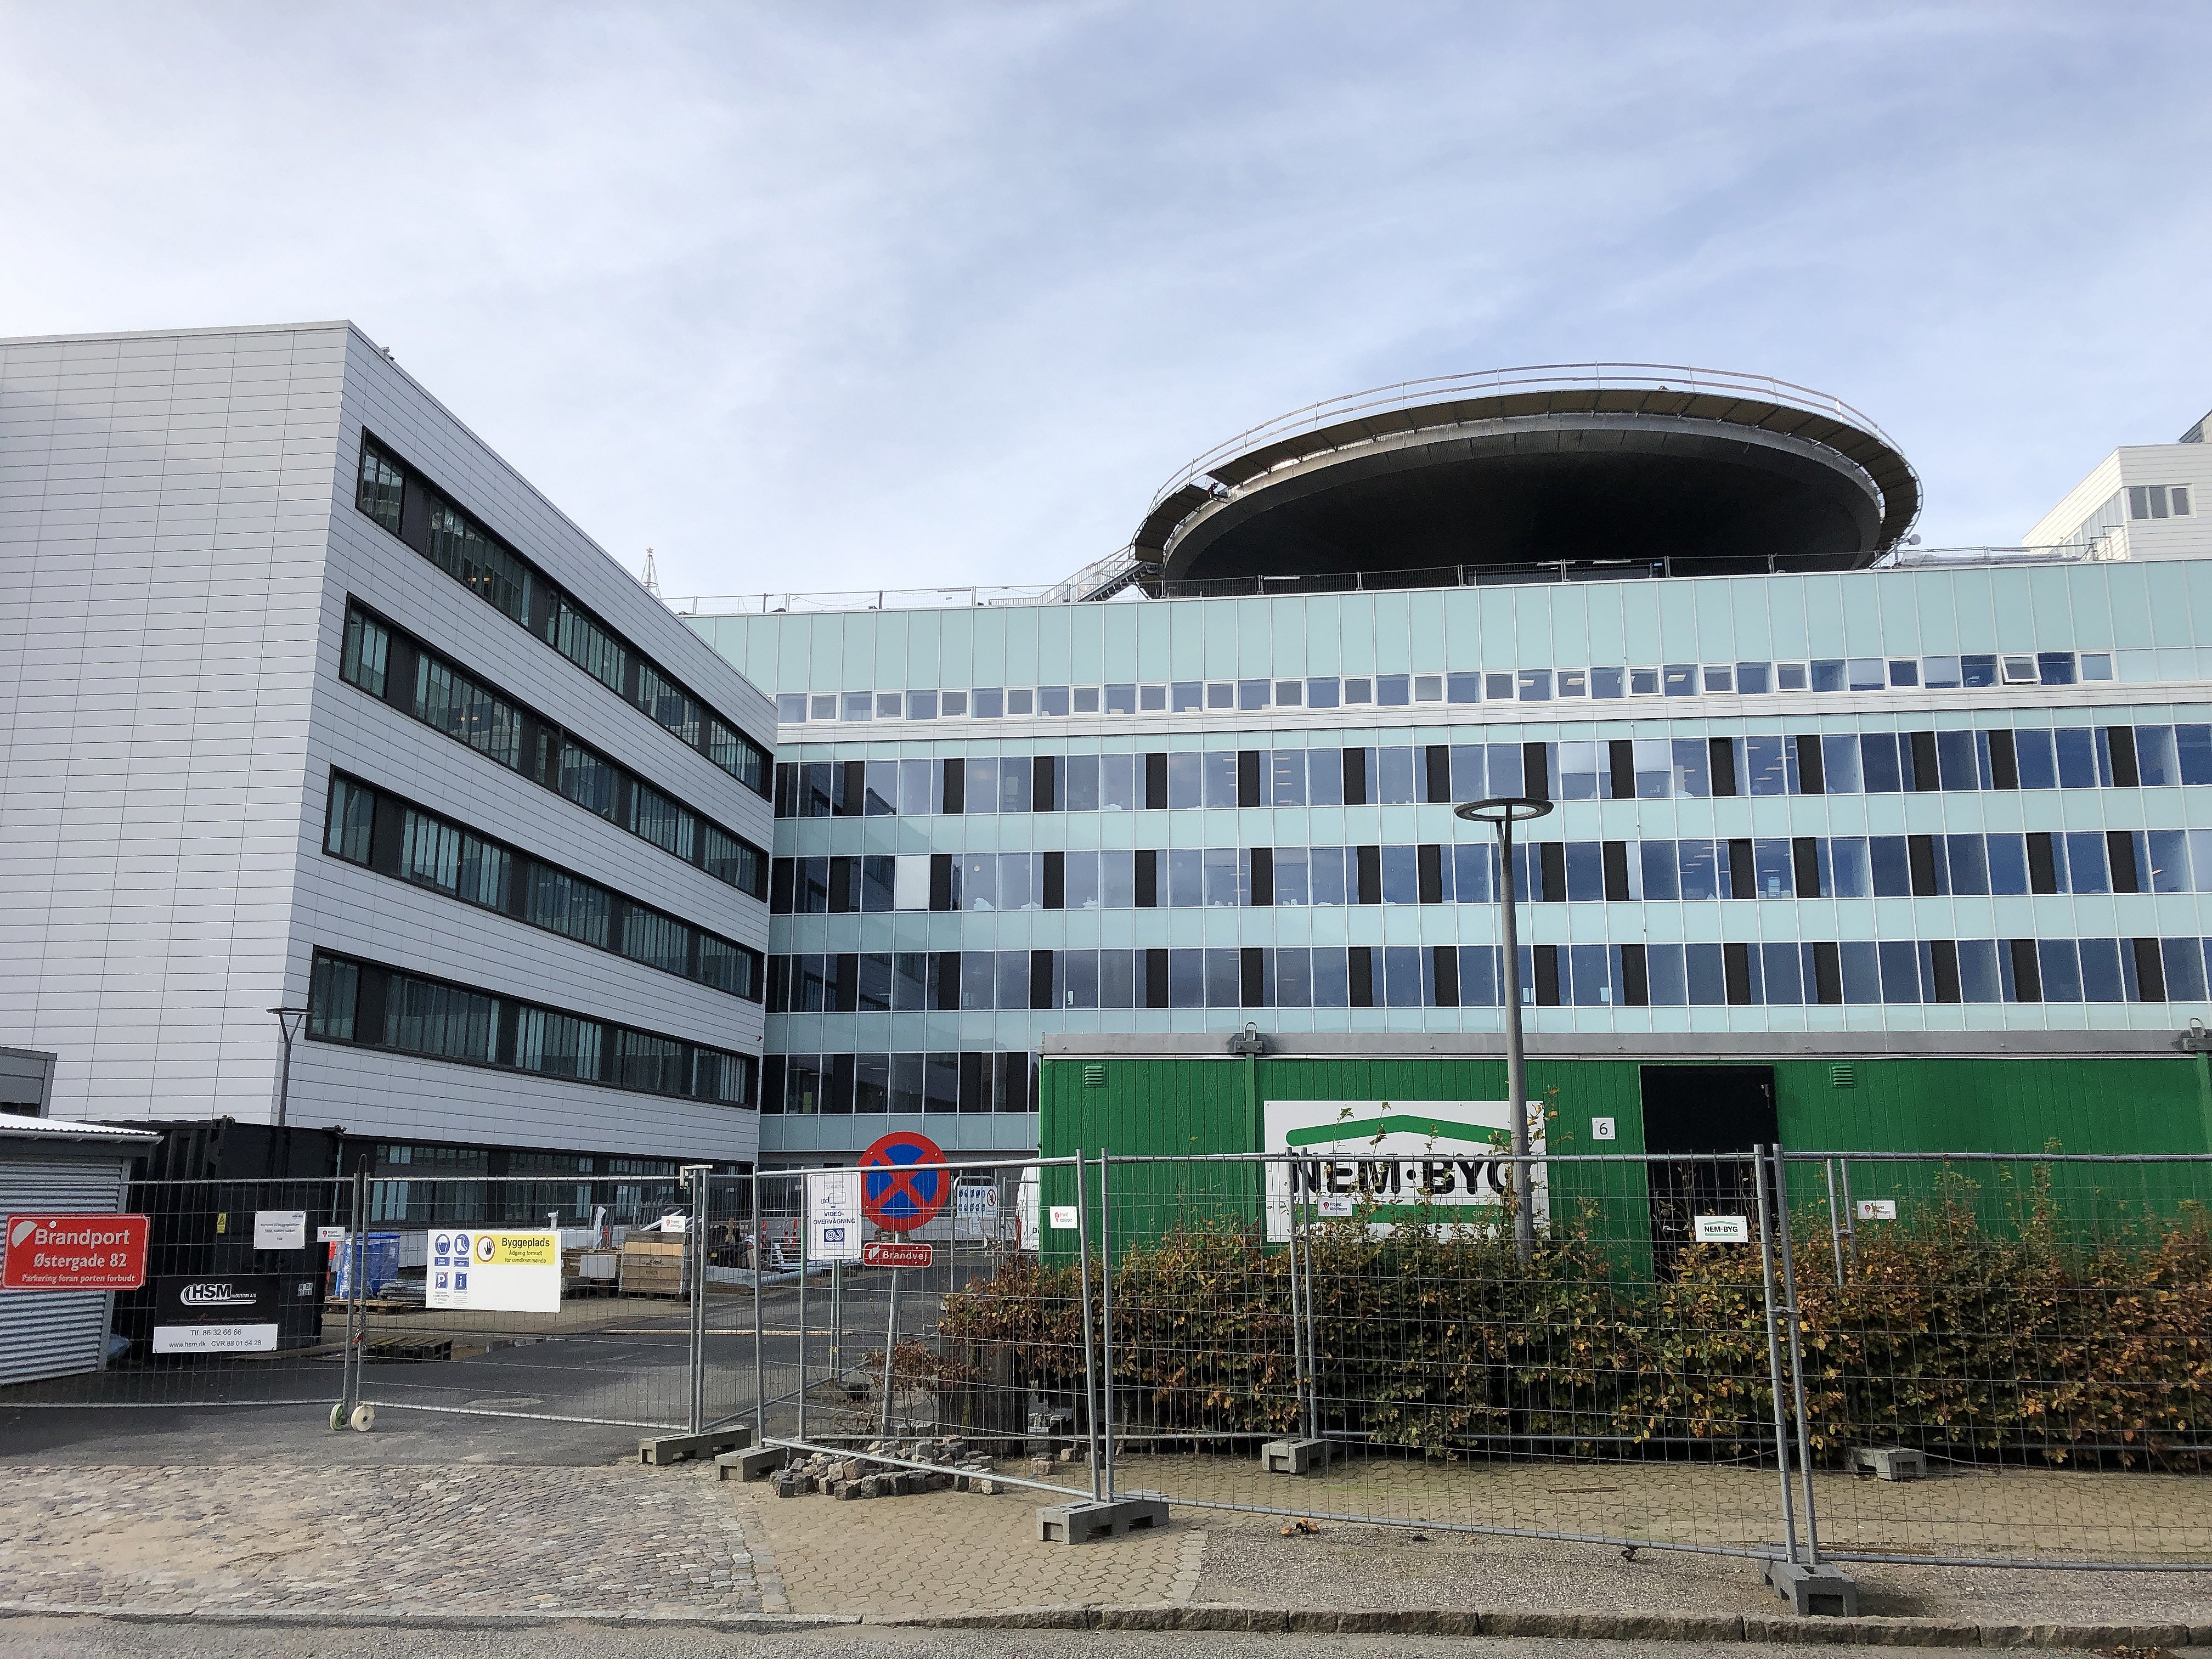 1.389 ansøgere til ny i Esbjerg - kun plads til | TV SYD